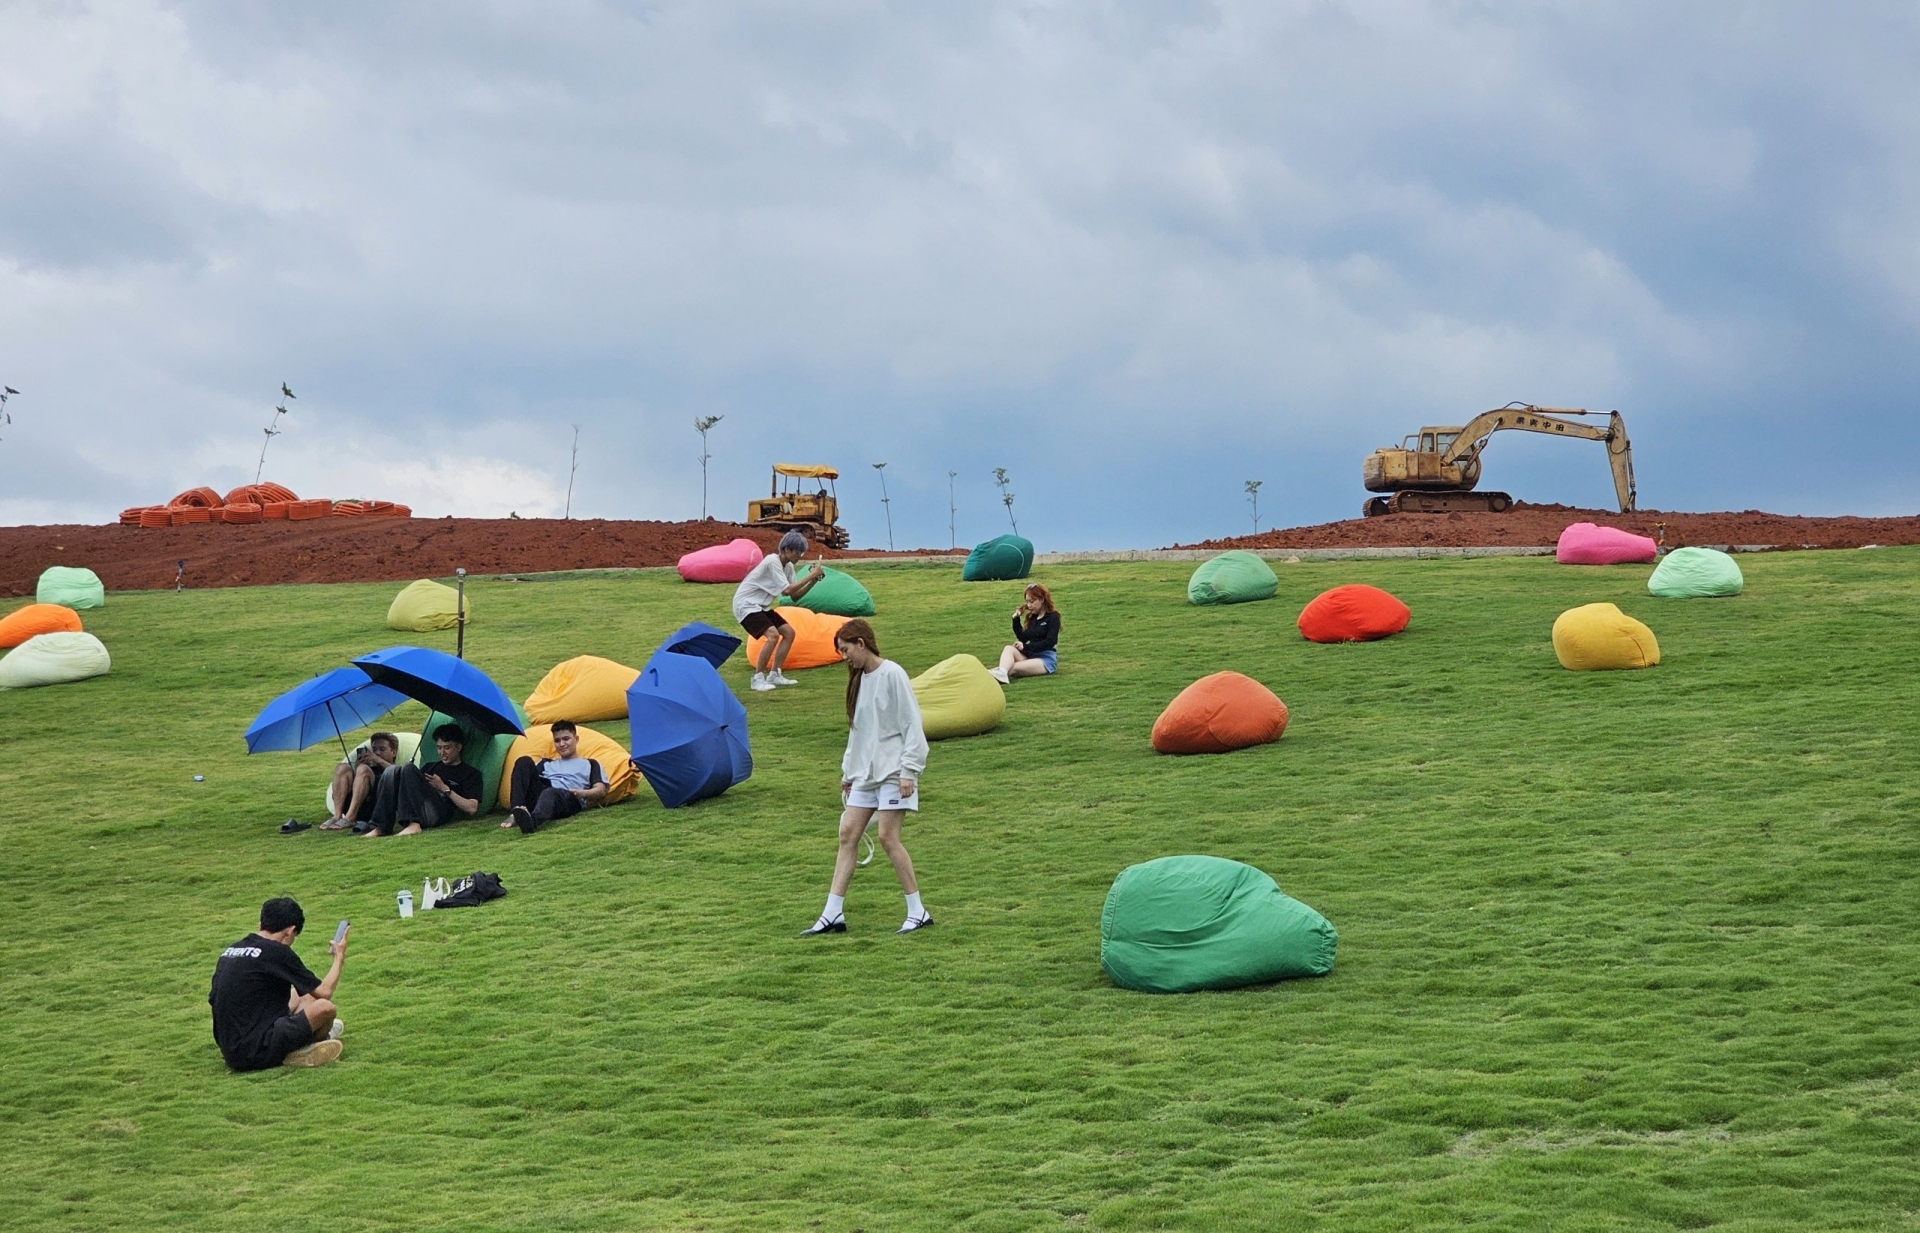 Mặc dù trên đồi cao đang diễn ra các hoạt động san gạt, nhưng du khách vẫn vô tư vui chơi ở bãi cỏ phía dưới